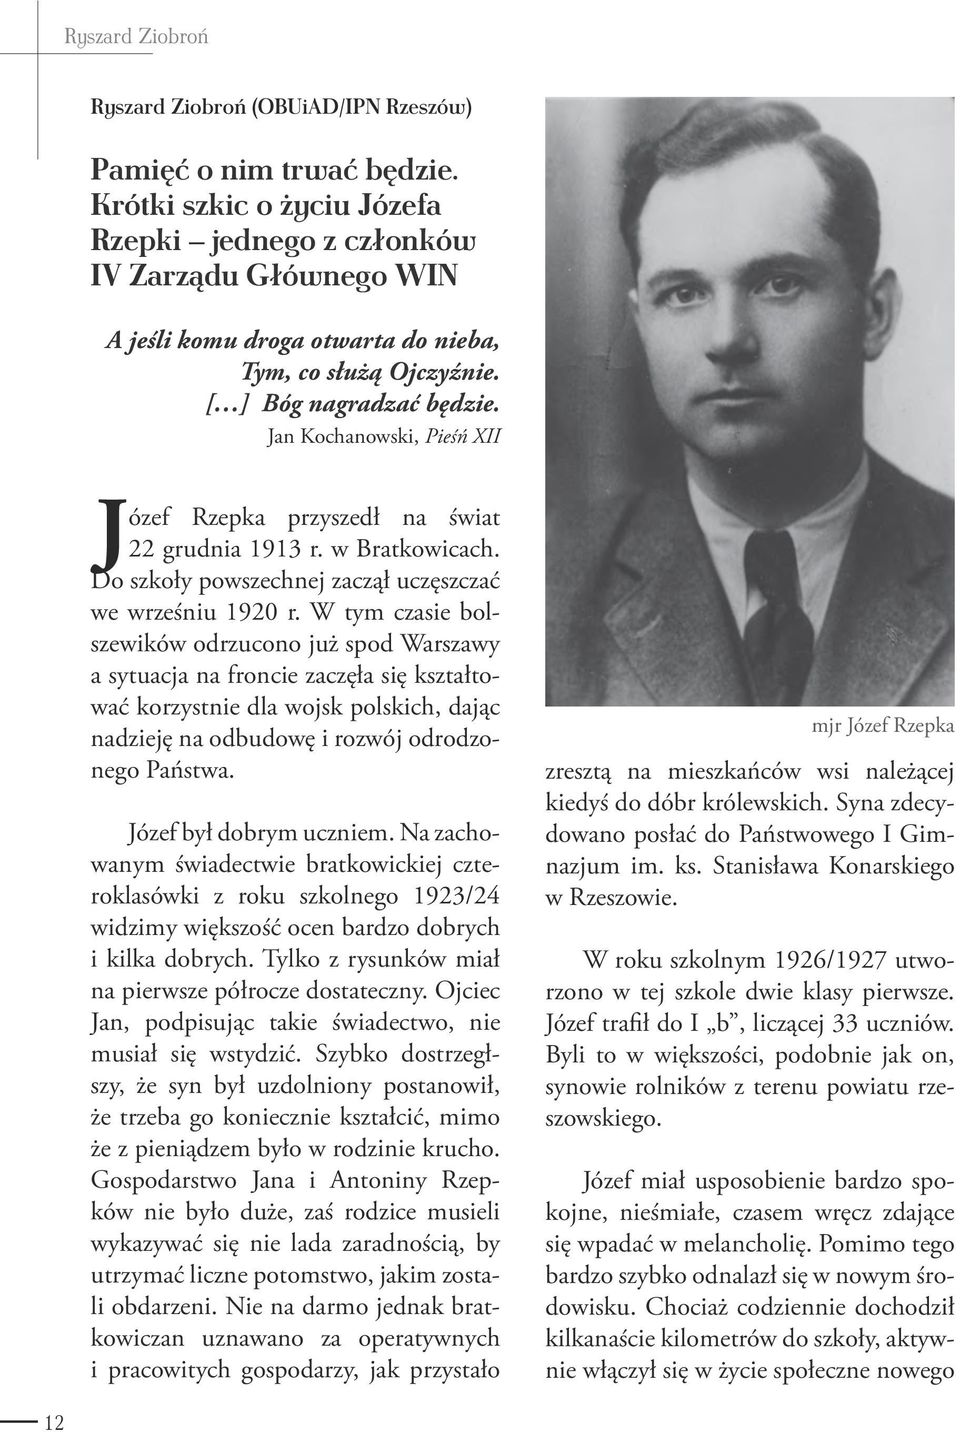 Jan Kochanowski, Pieśń XII Józef Rzepka przyszedł na świat 22 grudnia 1913 r. w Bratkowicach. Do szkoły powszechnej zaczął uczęszczać we wrześniu 1920 r.